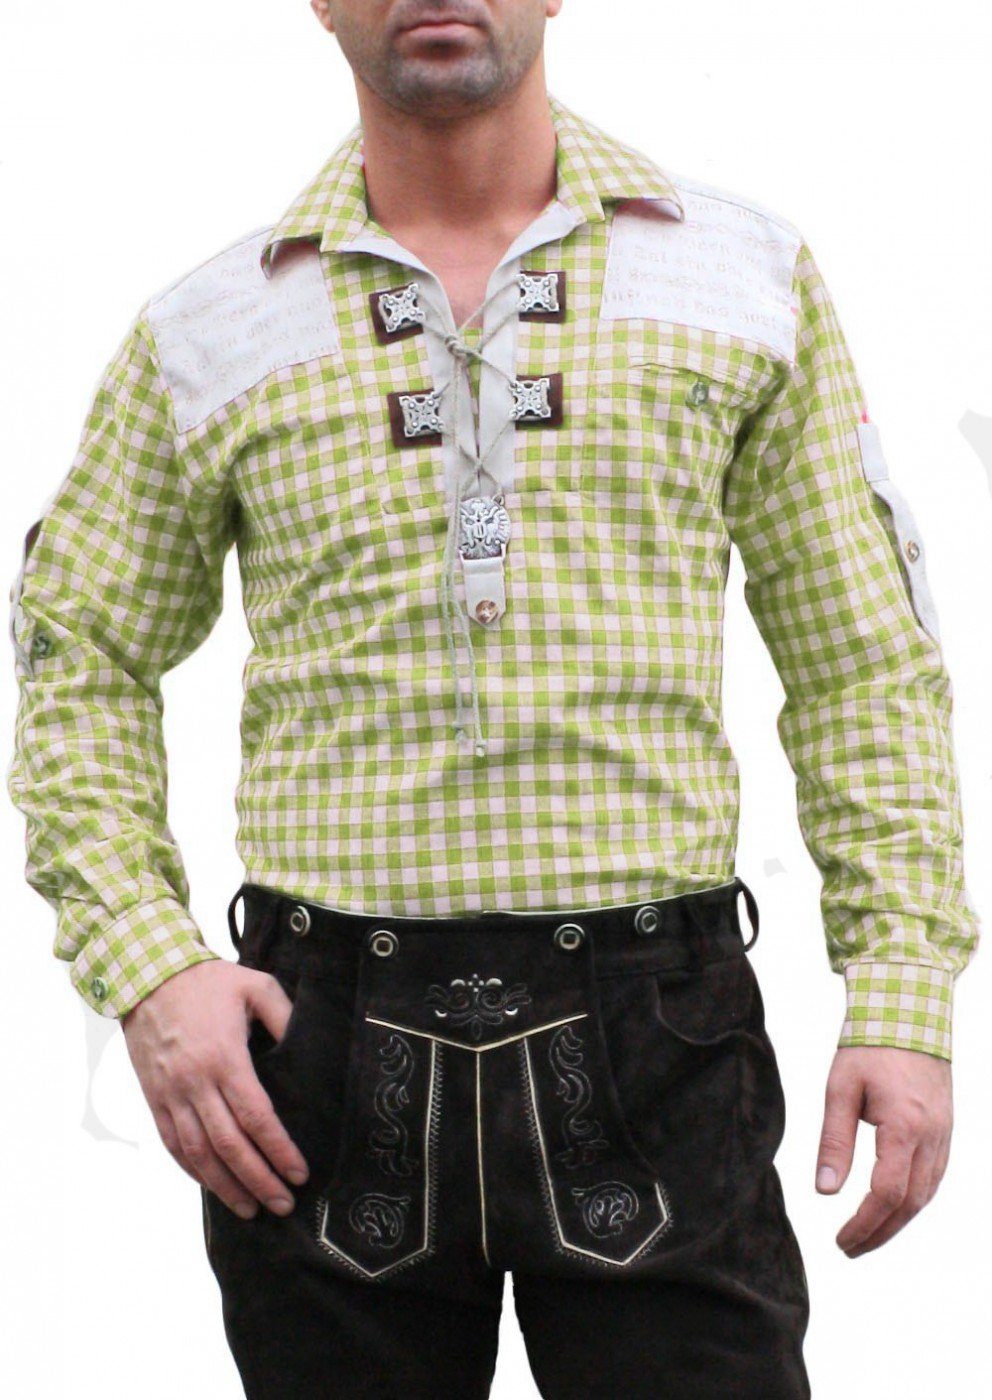 Giftgrün/kariert Trachtenhemd Verzierung Lederhosen O12-Giftgrün für Trachtenhemd German Wear mit